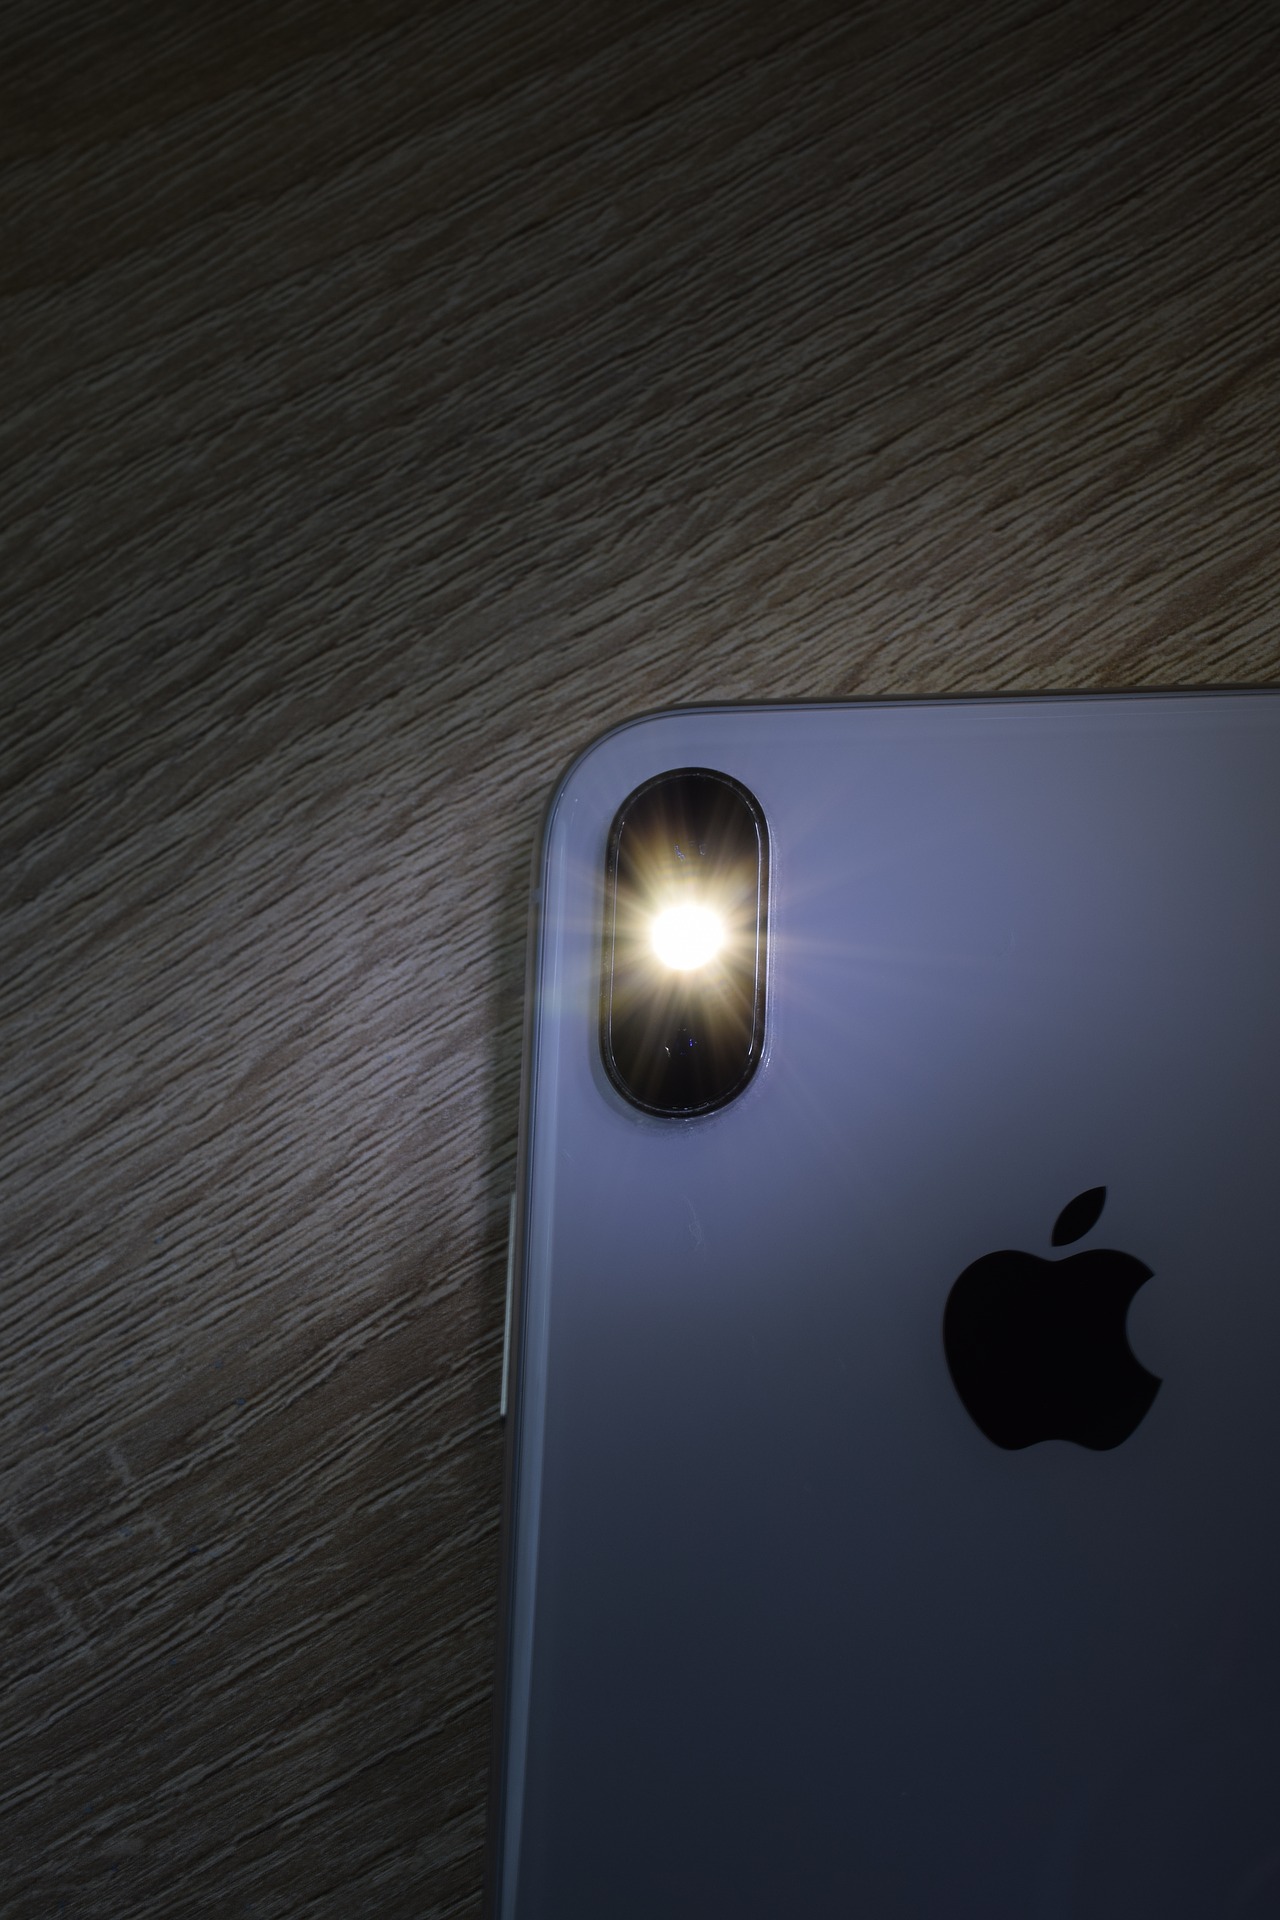 Iphoneのライトが付かなくなる原因と対処法について解説